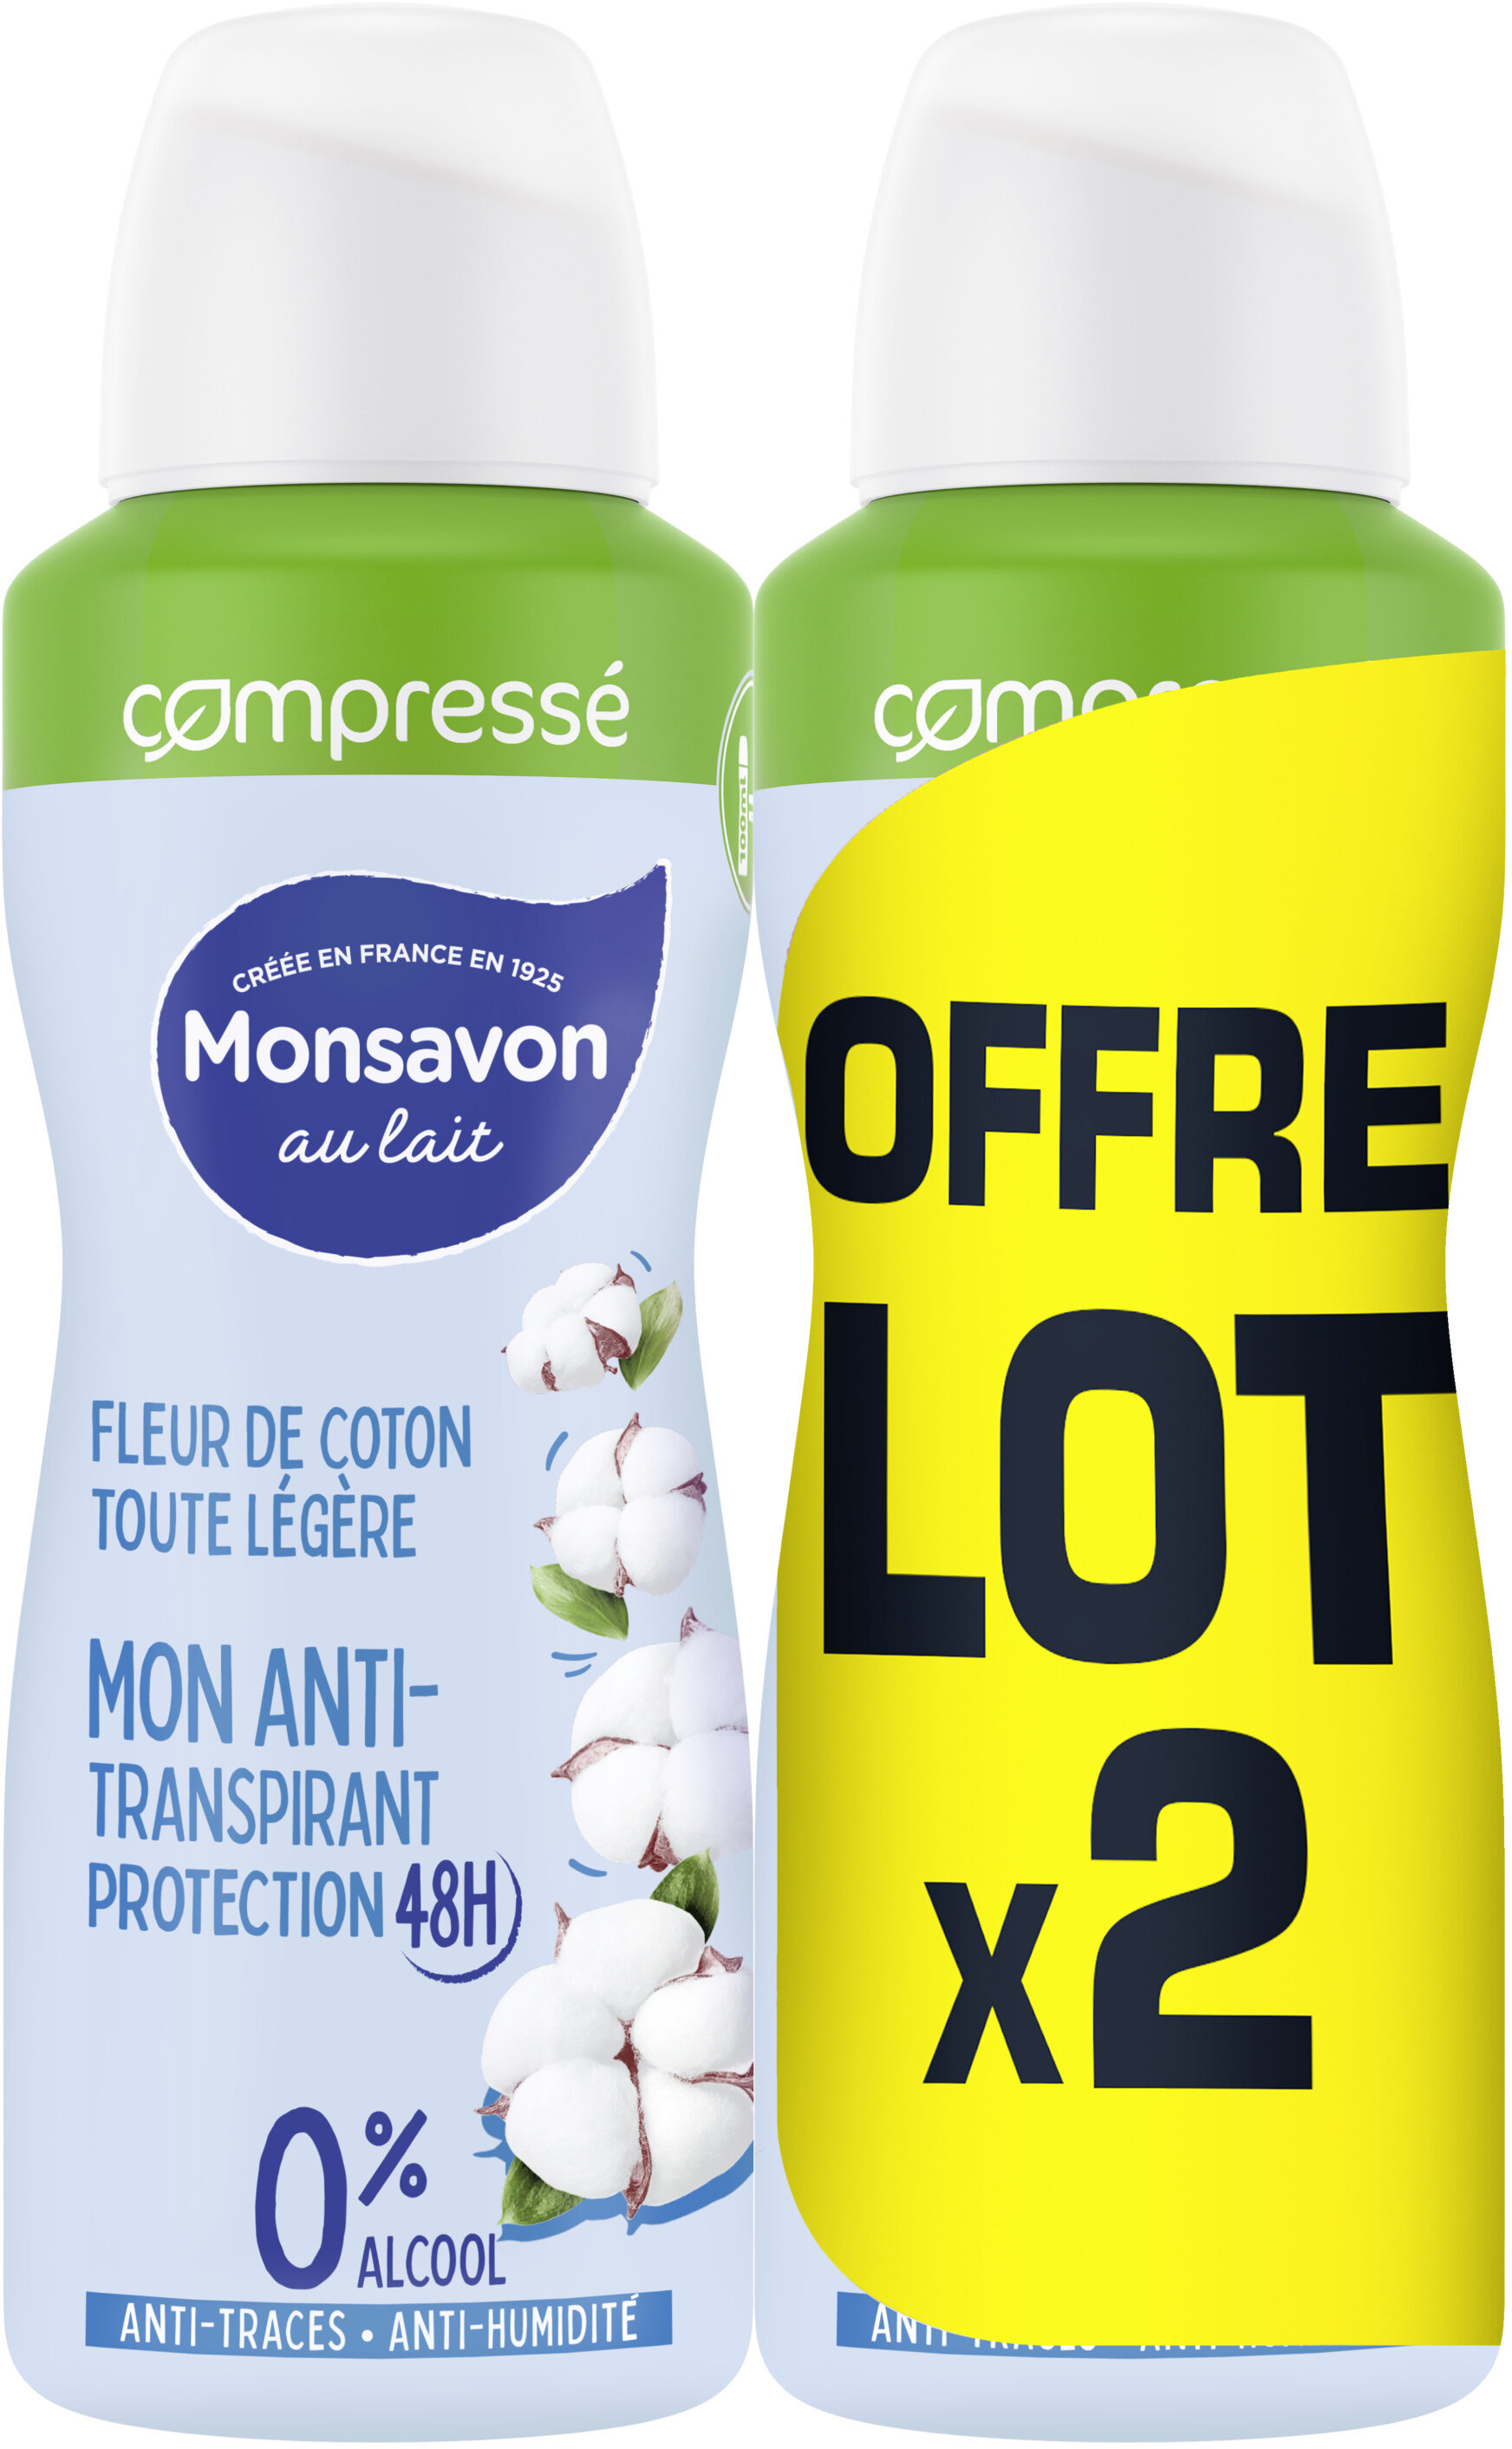 Monsavon Anti-Transpirant Femme Spray Compressé Fleur de Coton Toute Légère 2x100ml - Produkt - fr